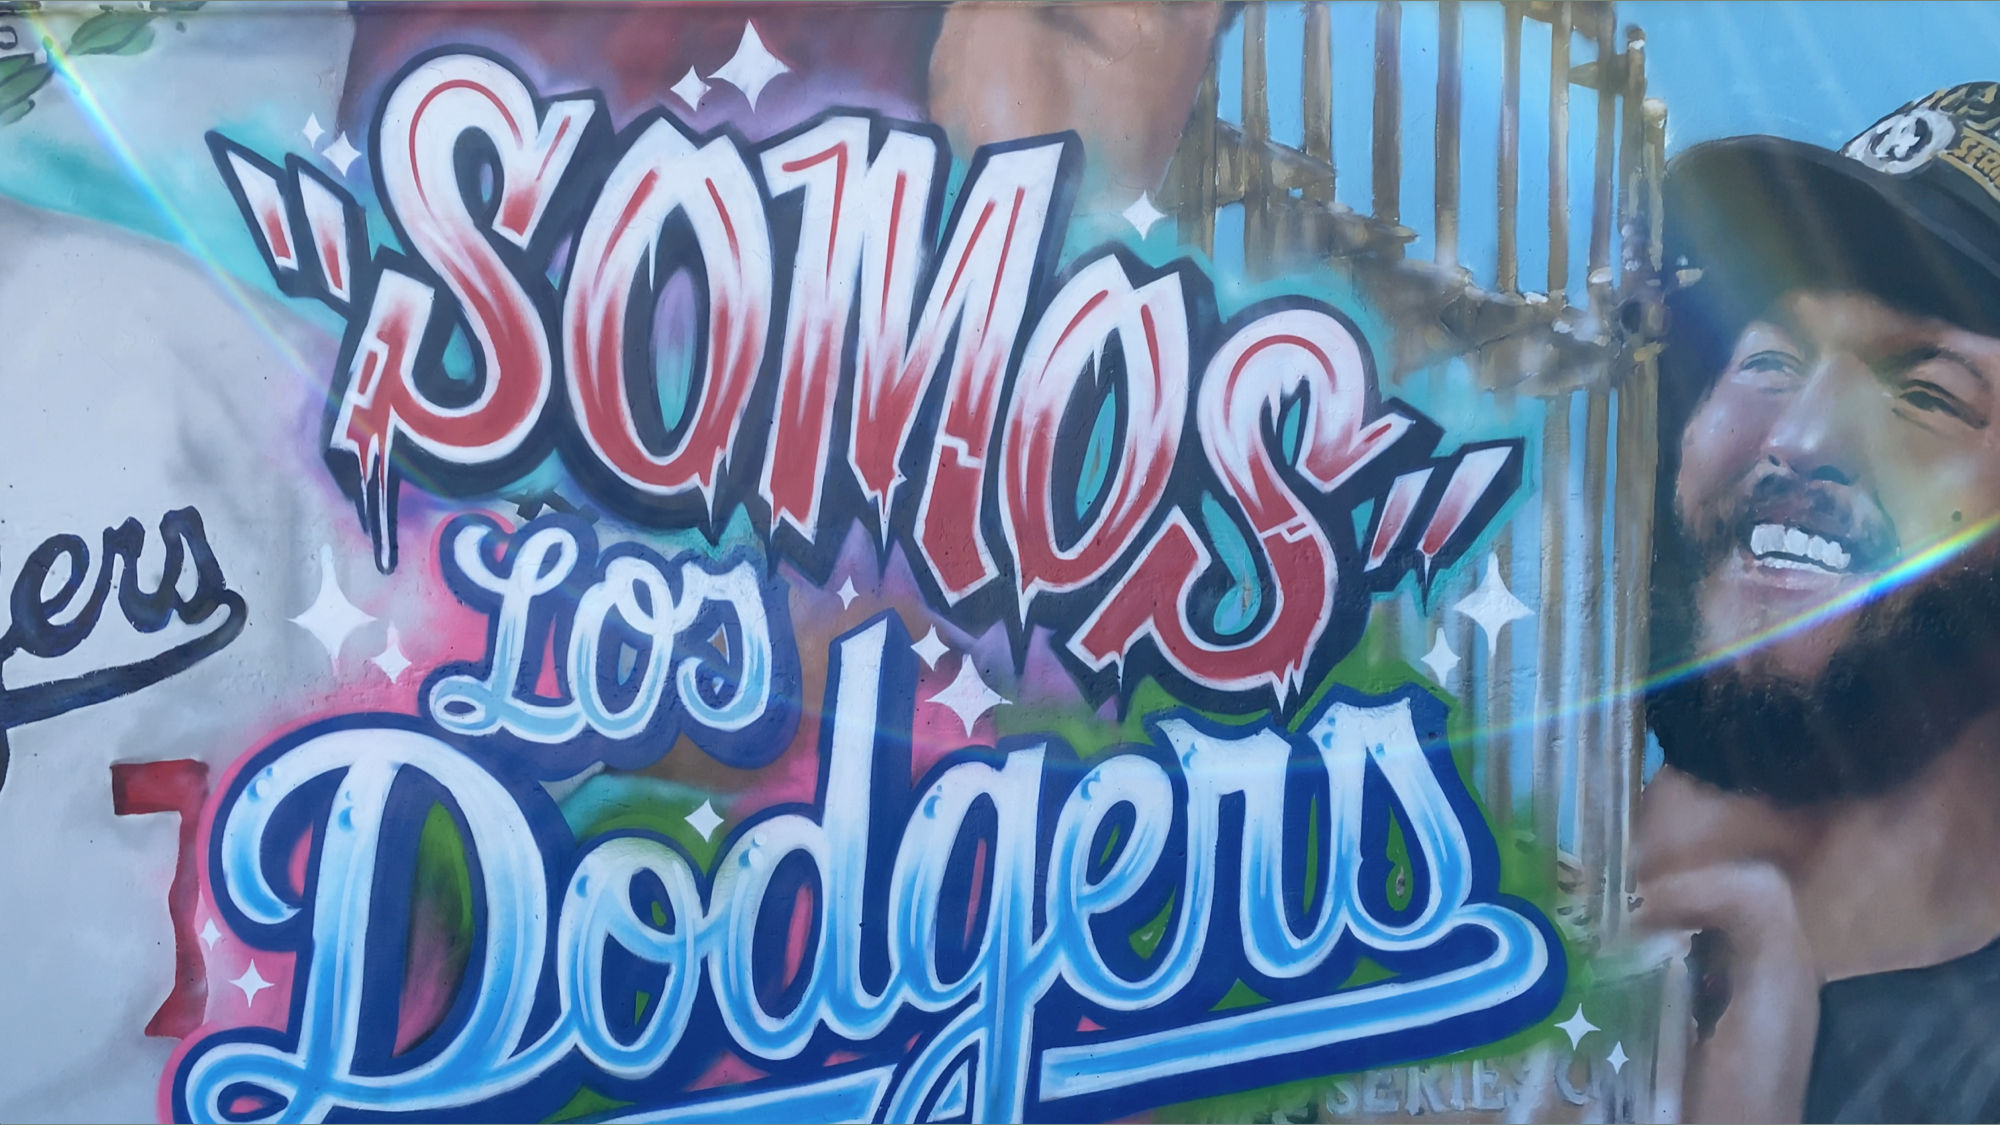 Murals Somos Los Angeles